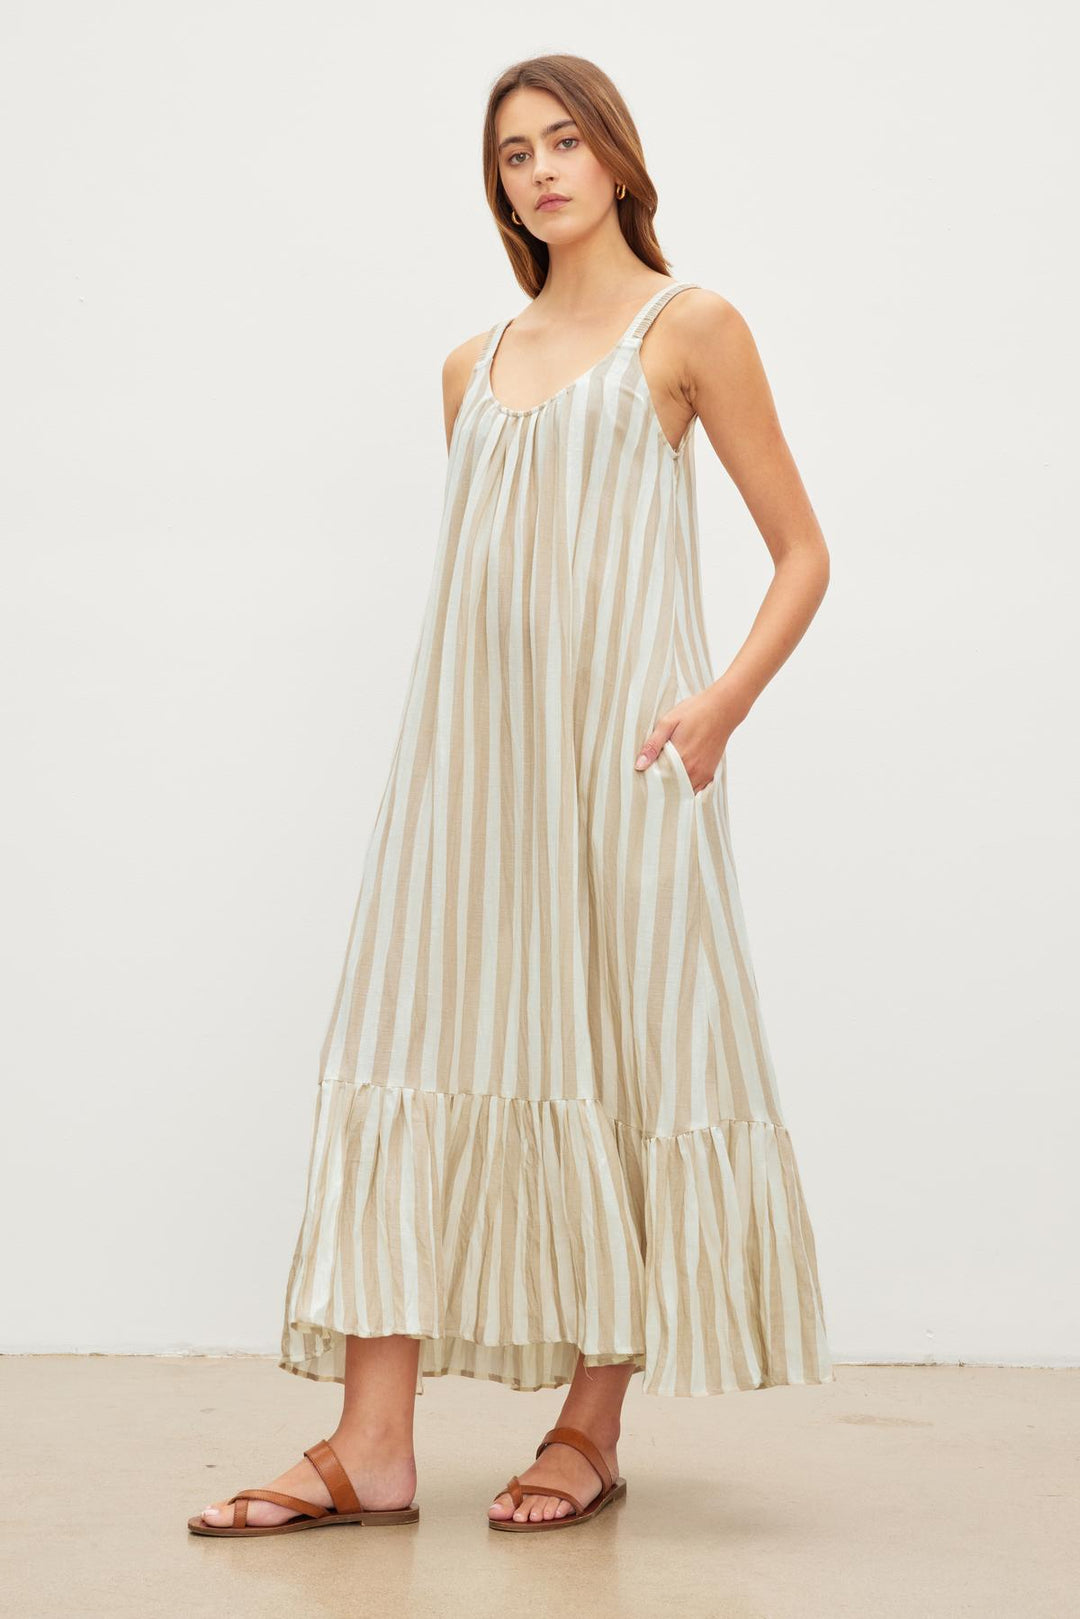 Joelle Velvet Dress | Made To Order